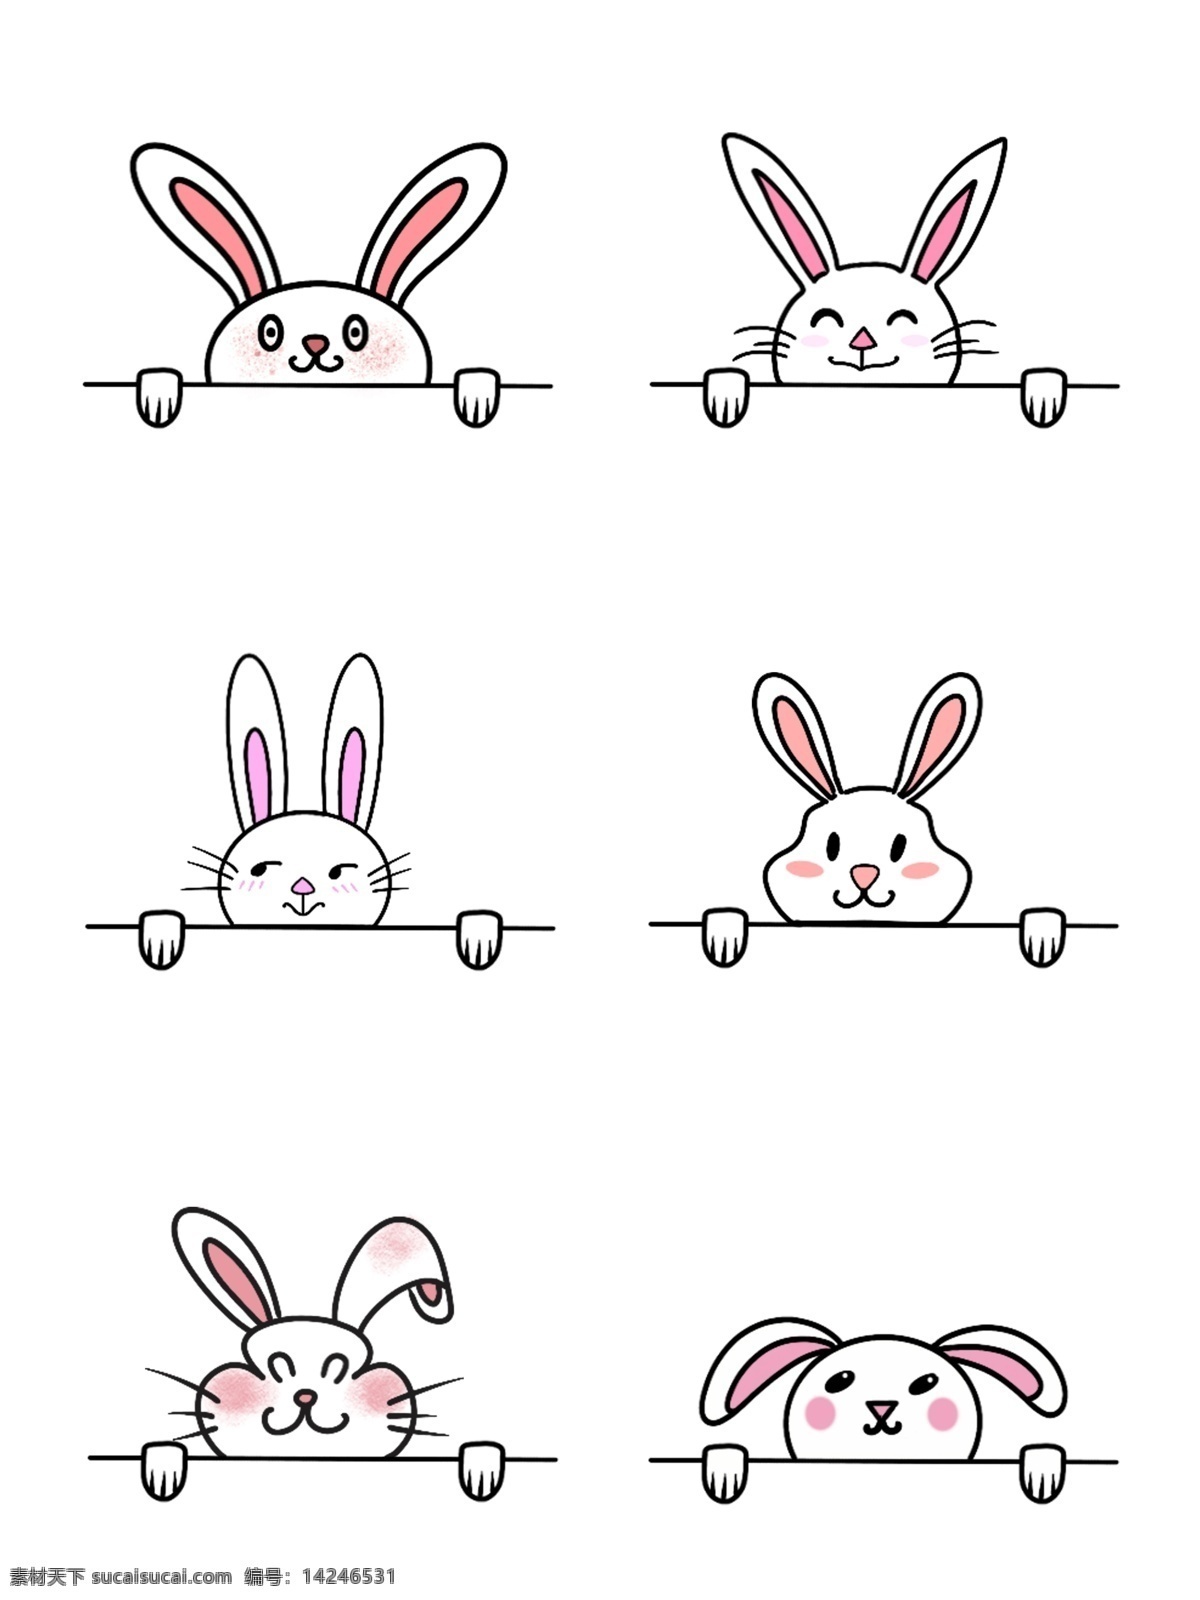 矢量 编辑 兔子 手绘 图标 矢量兔子 手绘兔子 长耳朵兔子 可爱兔子 标志图标 其他图标